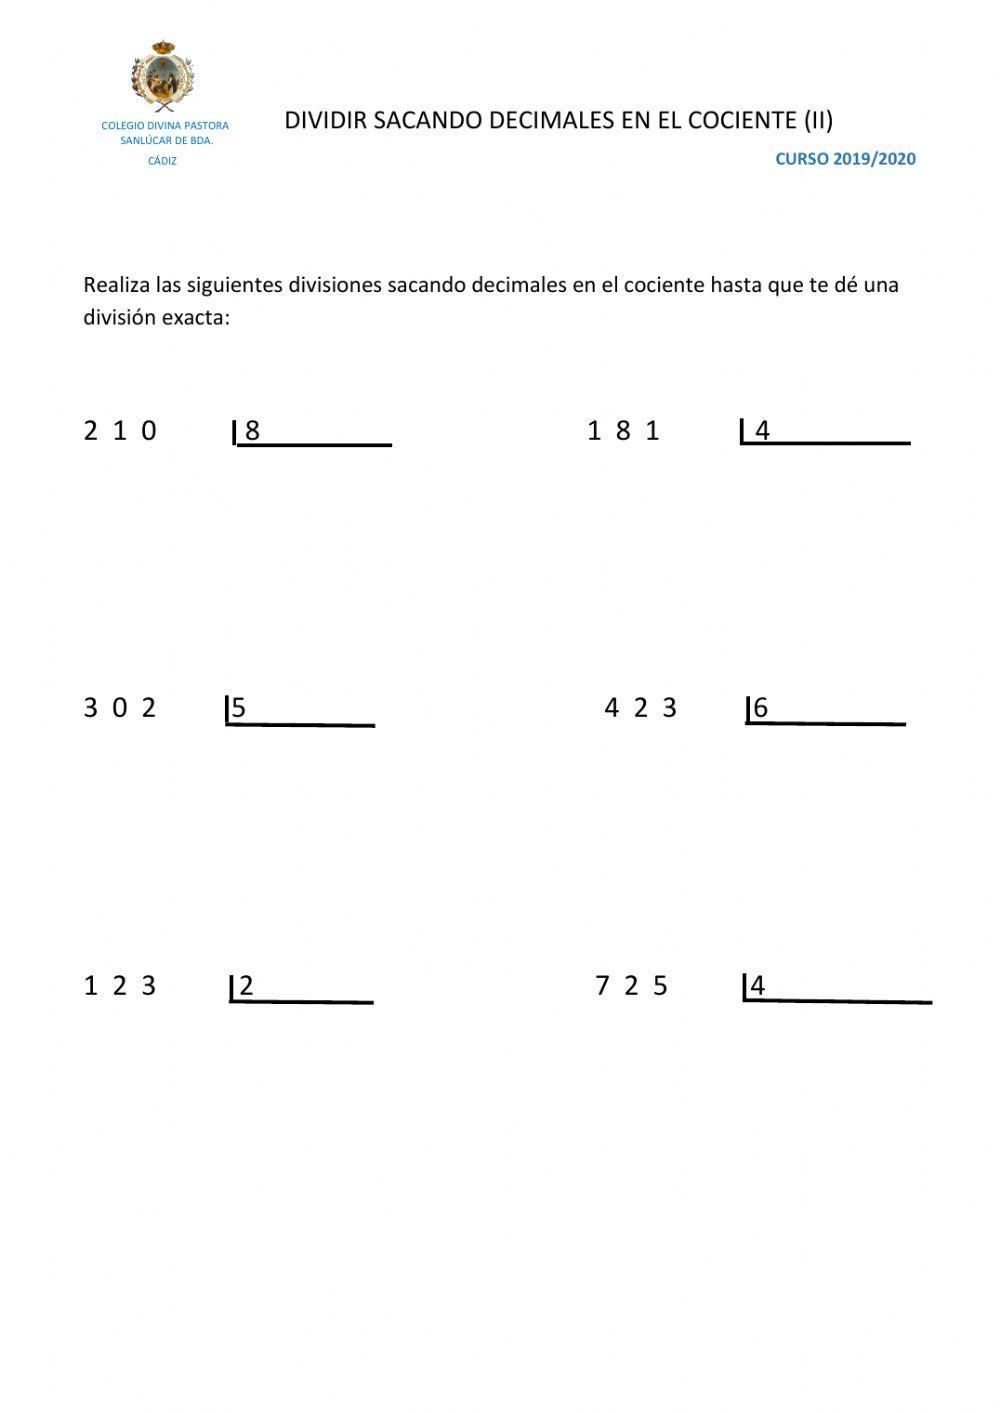 Dividir sacando decimales en el cociente (II)